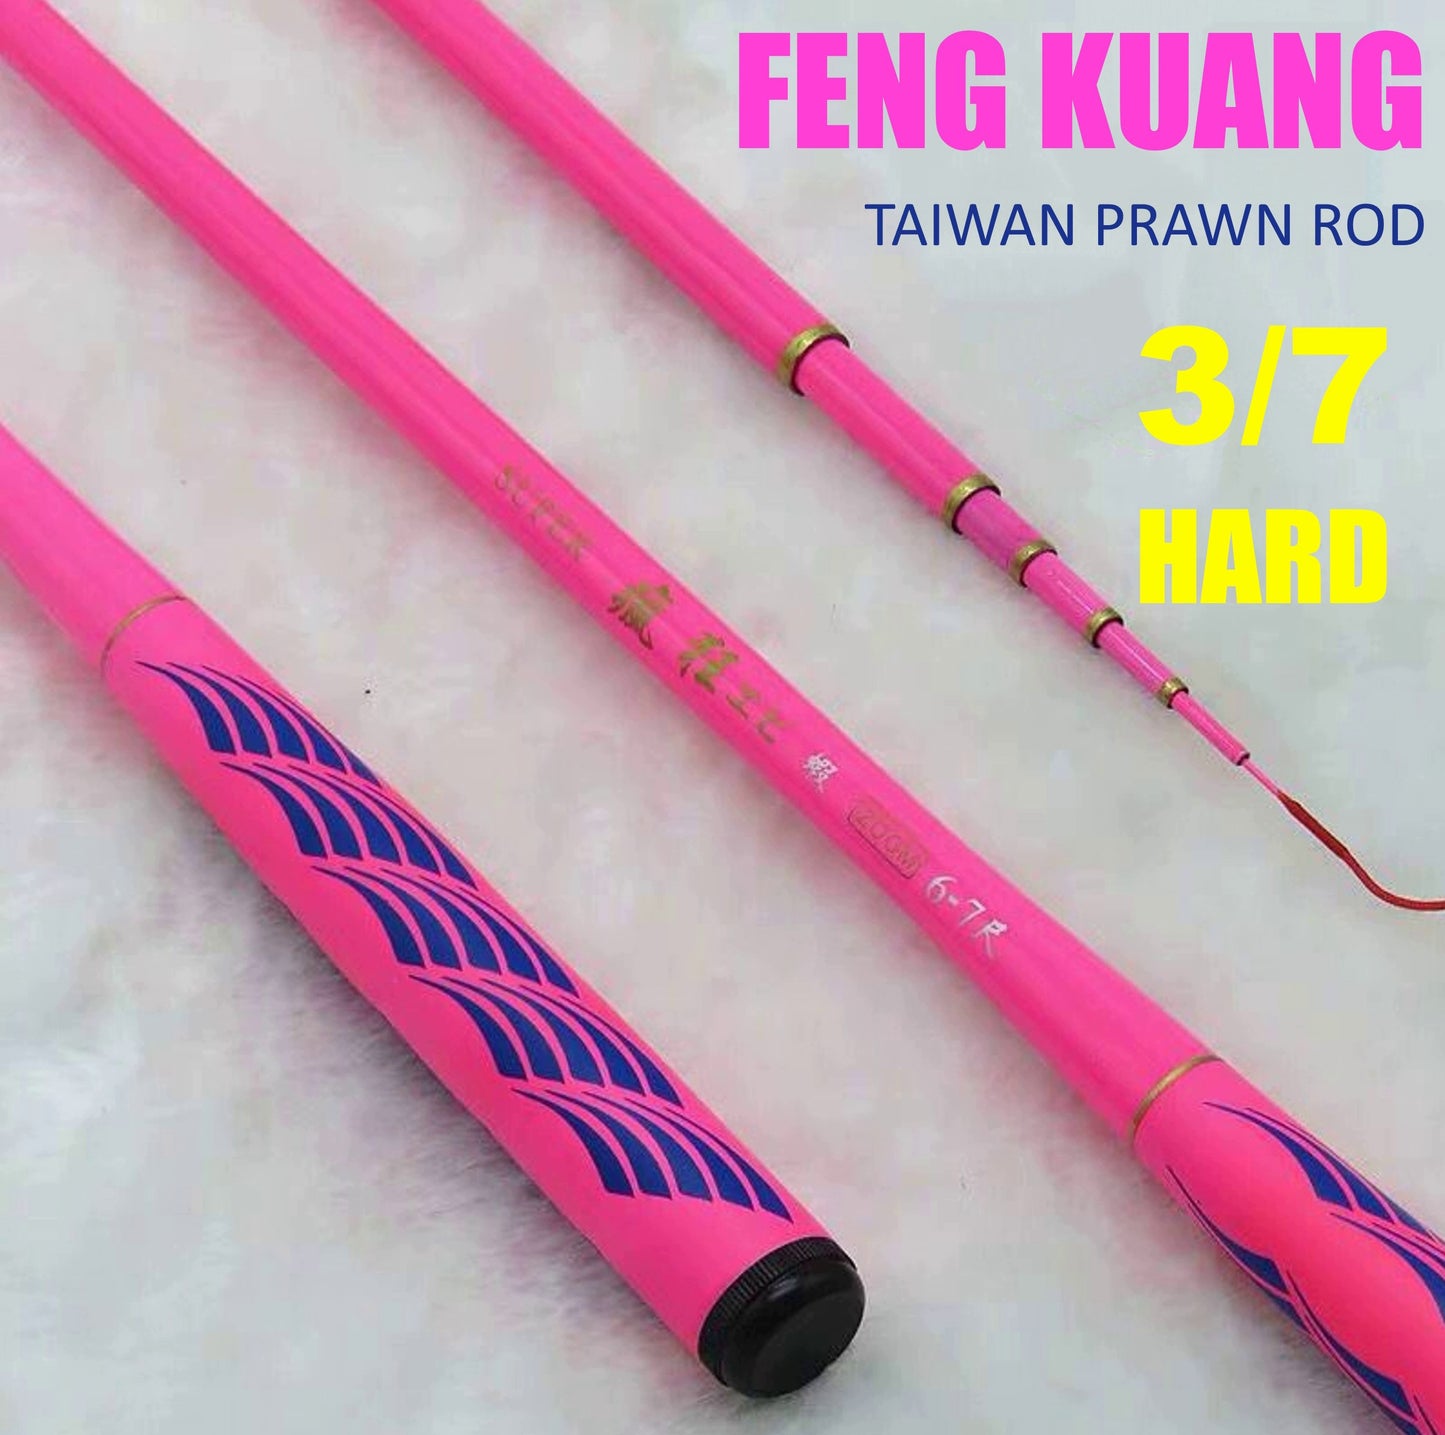 Feng Kuang Prawn Rod PR023